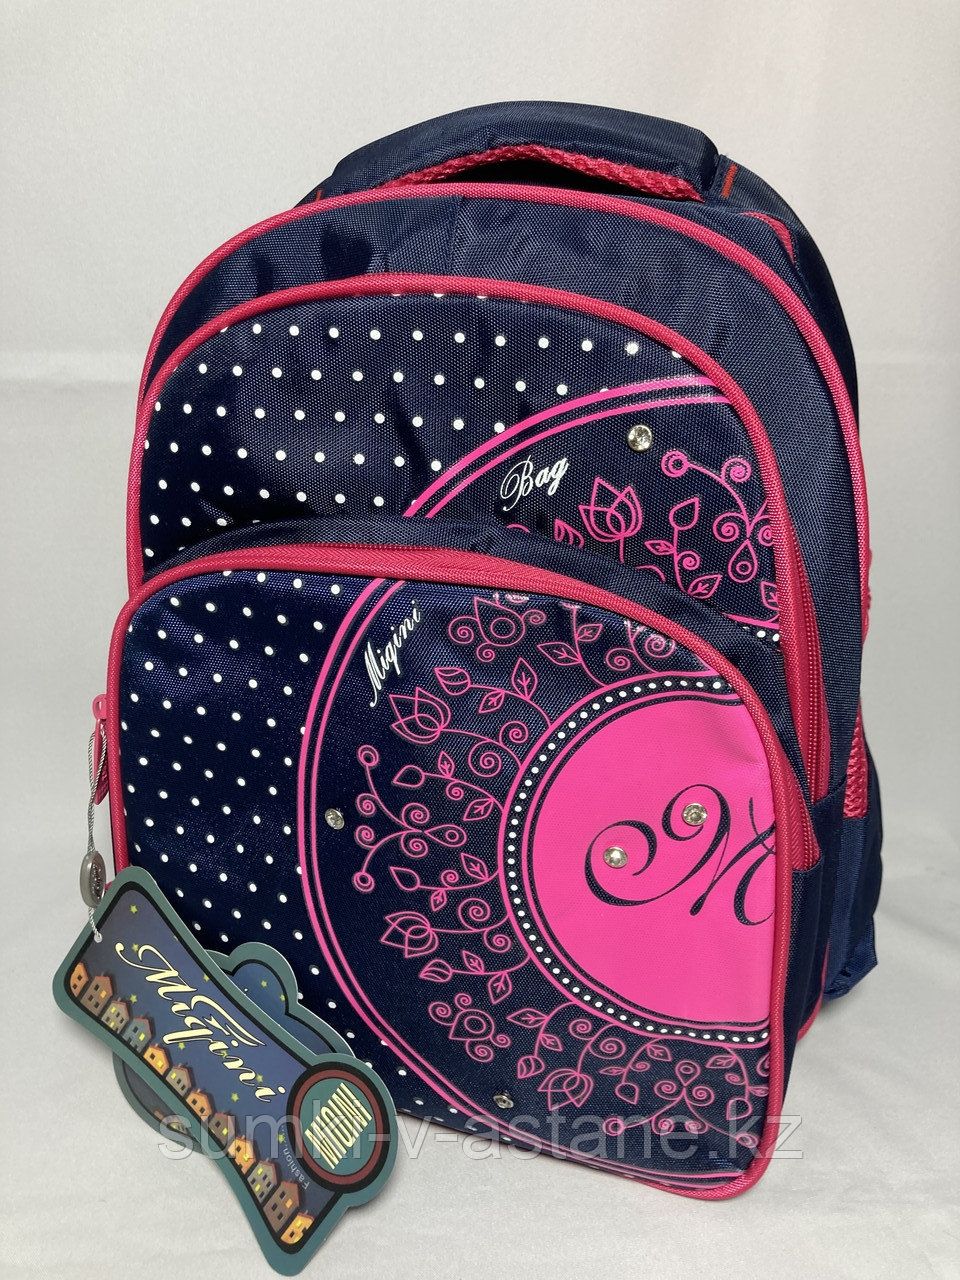 Школьный рюкзак для девочек "Migini", 1-3-й класс. Высота 36 см, ширина 27 см, глубина 17 см.